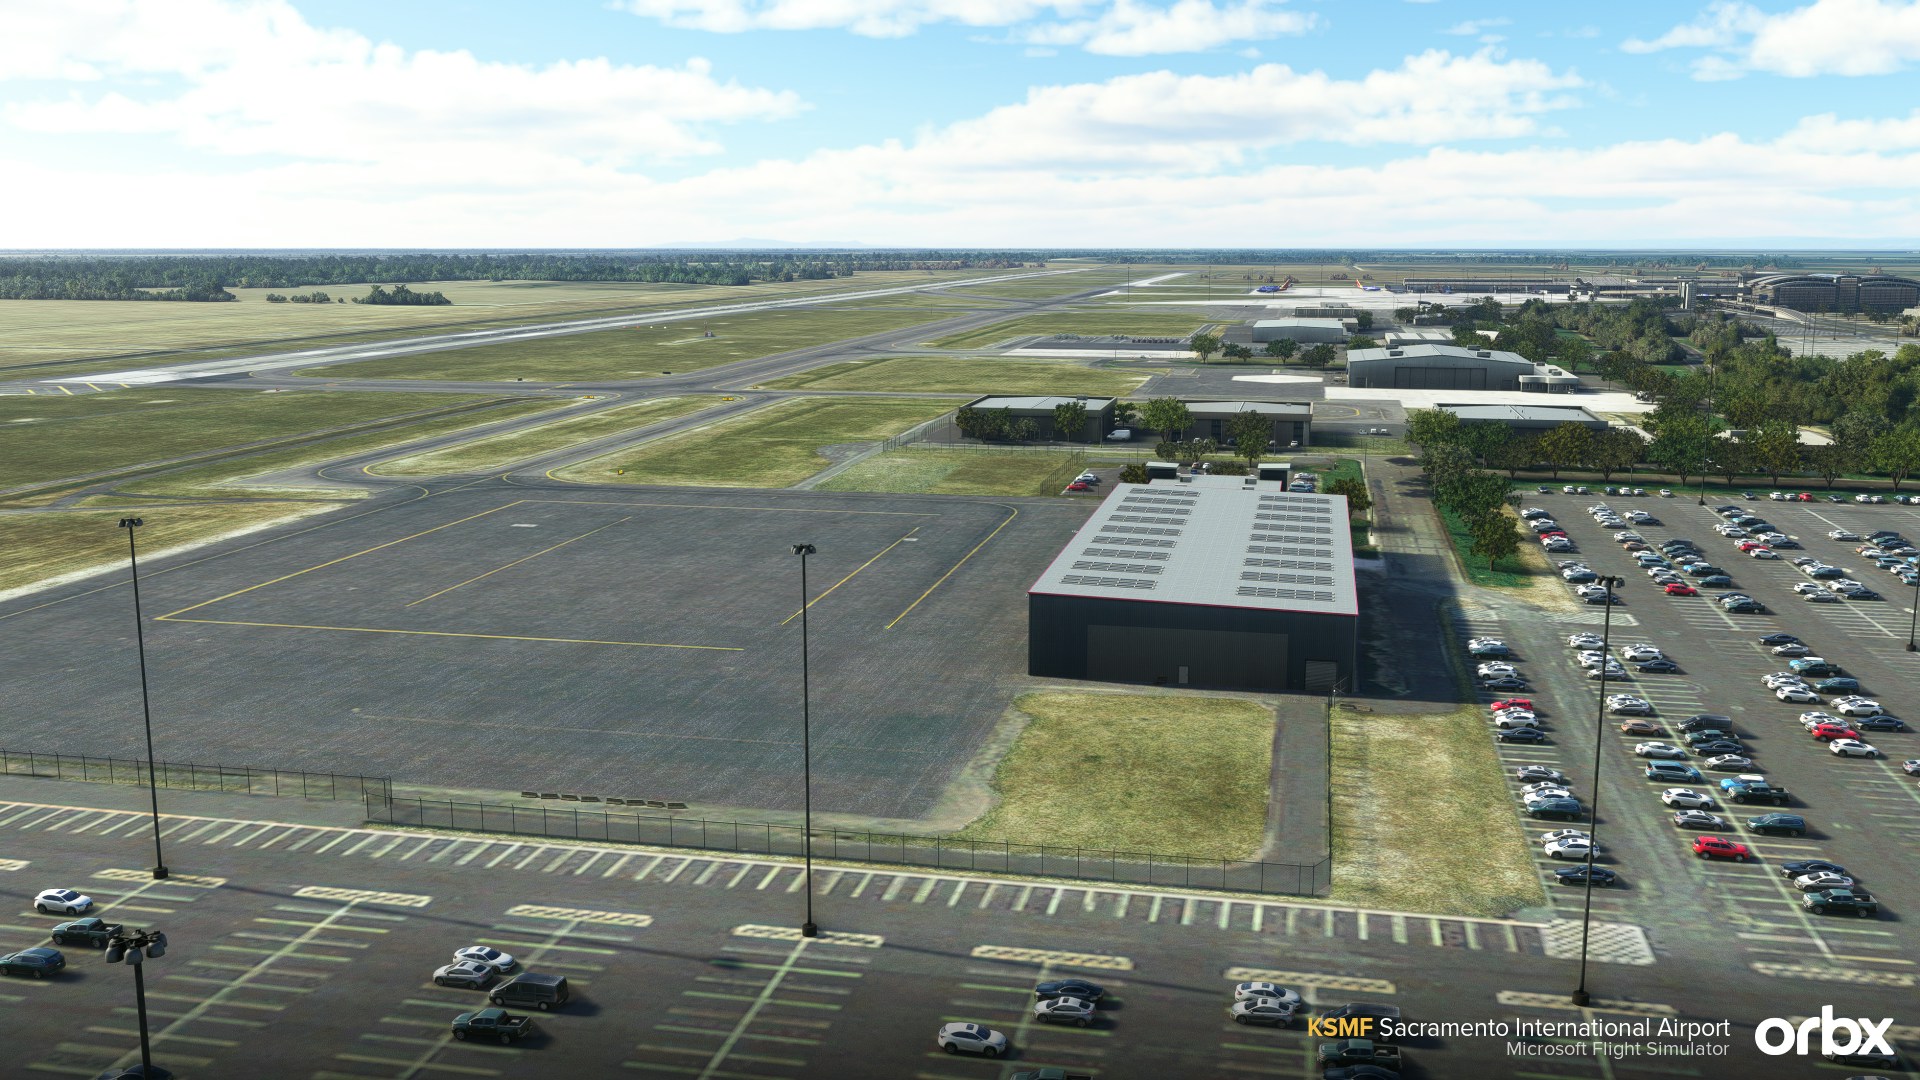 Orbx Announces Sacramento Airport